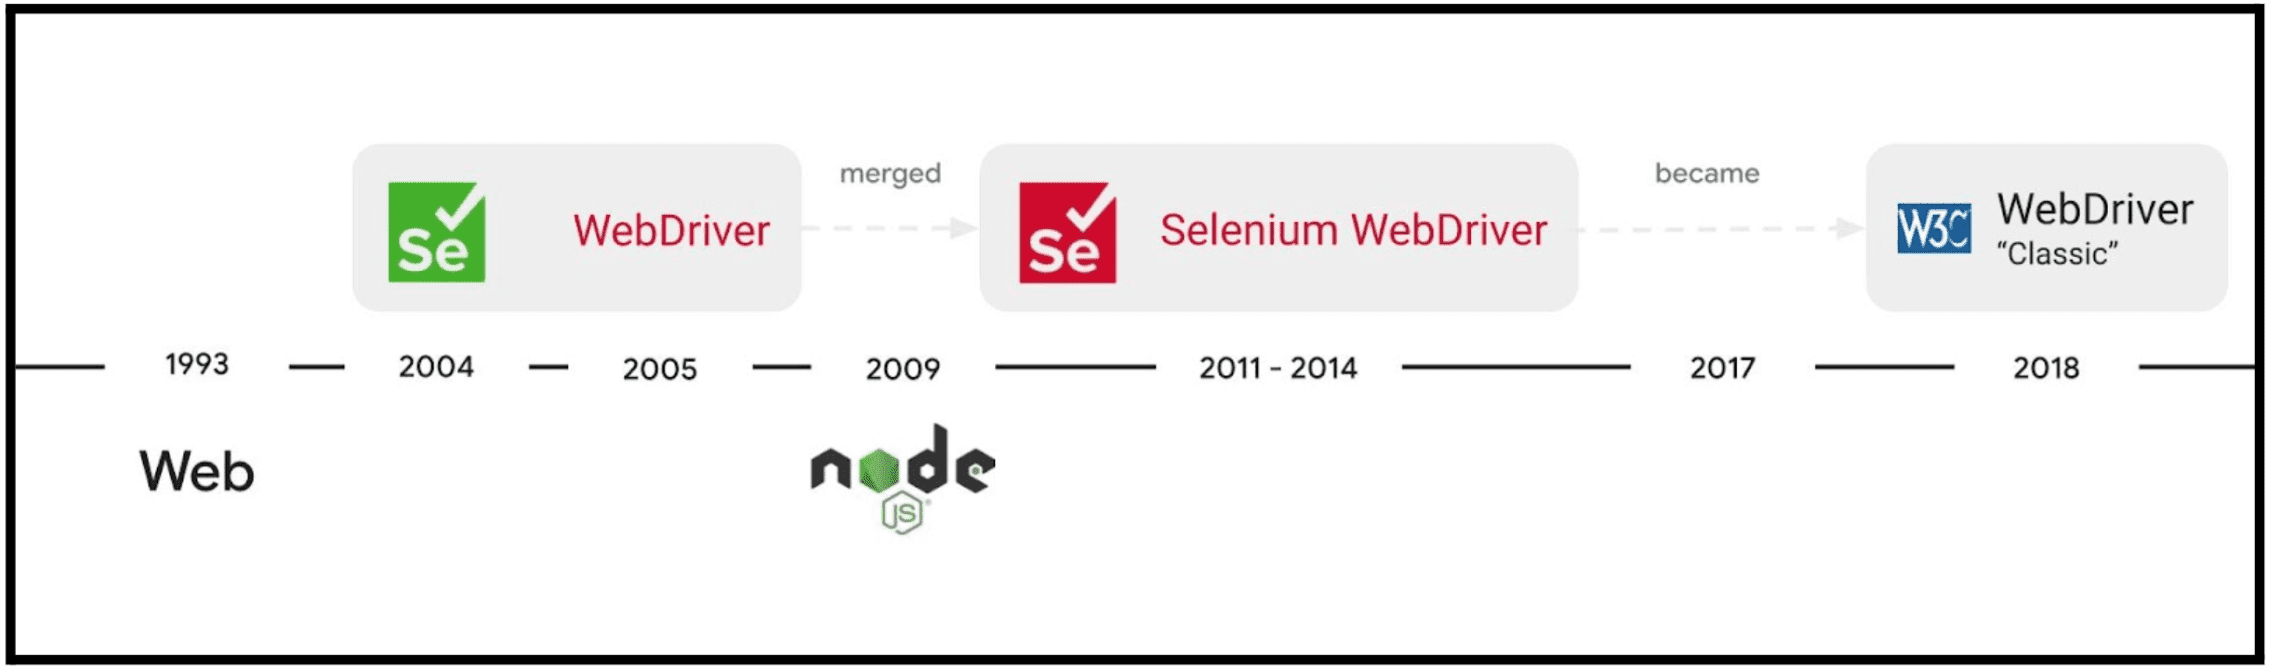 วิวัฒนาการของโครงการ Selenium WebDriver